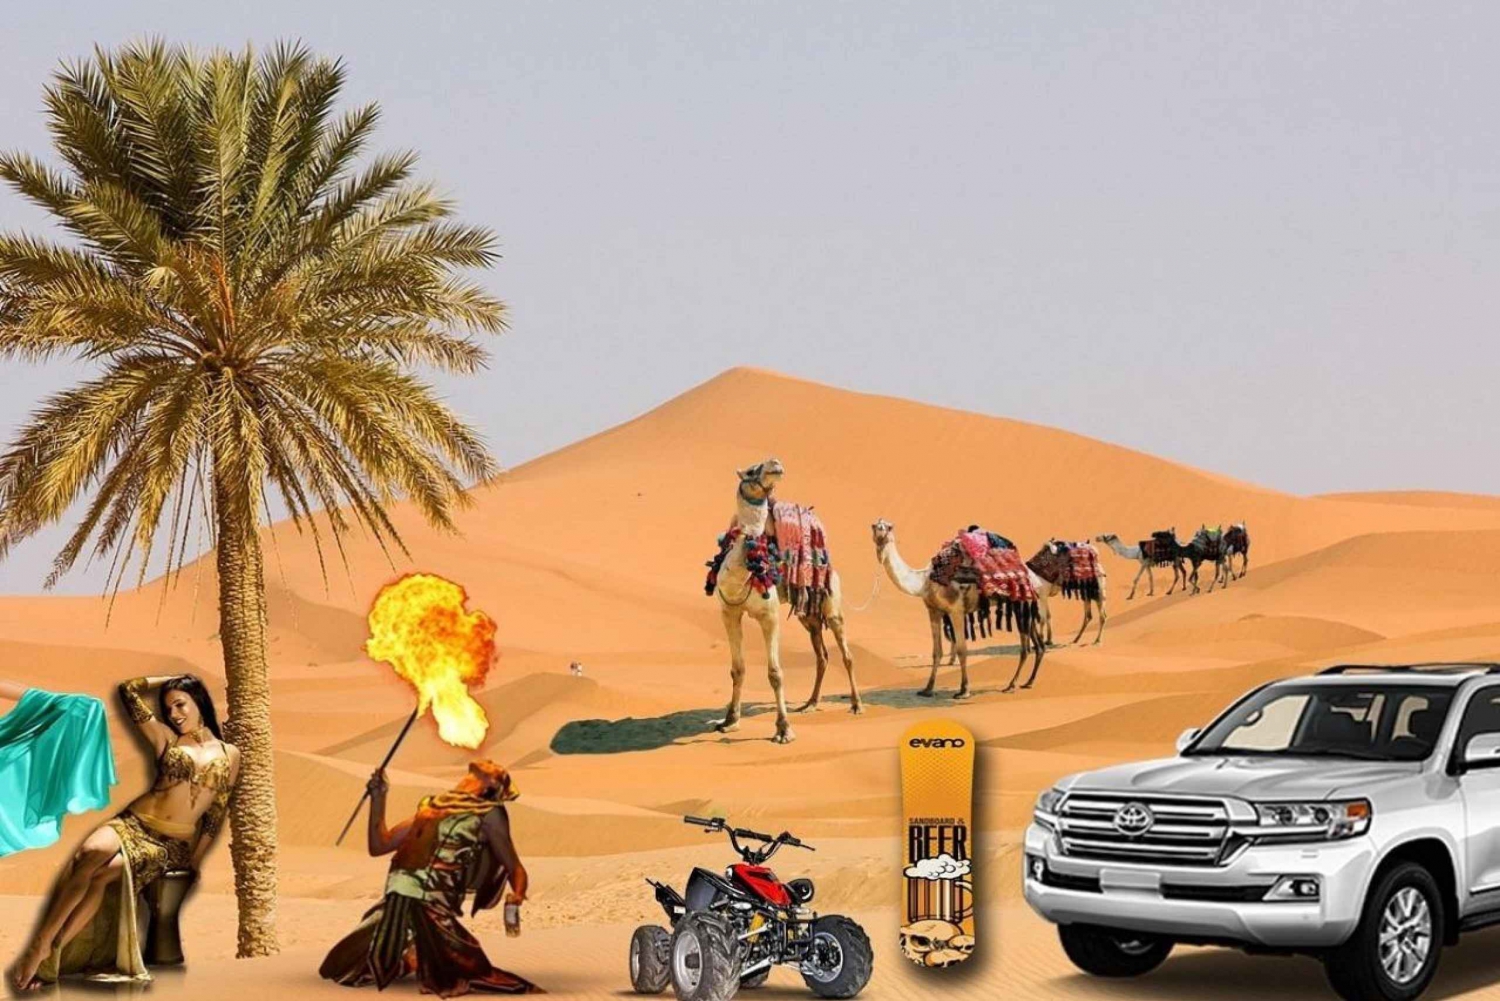 Dubai: Safáris no deserto ao pôr do sol, jantar, shows e passeio de camelo